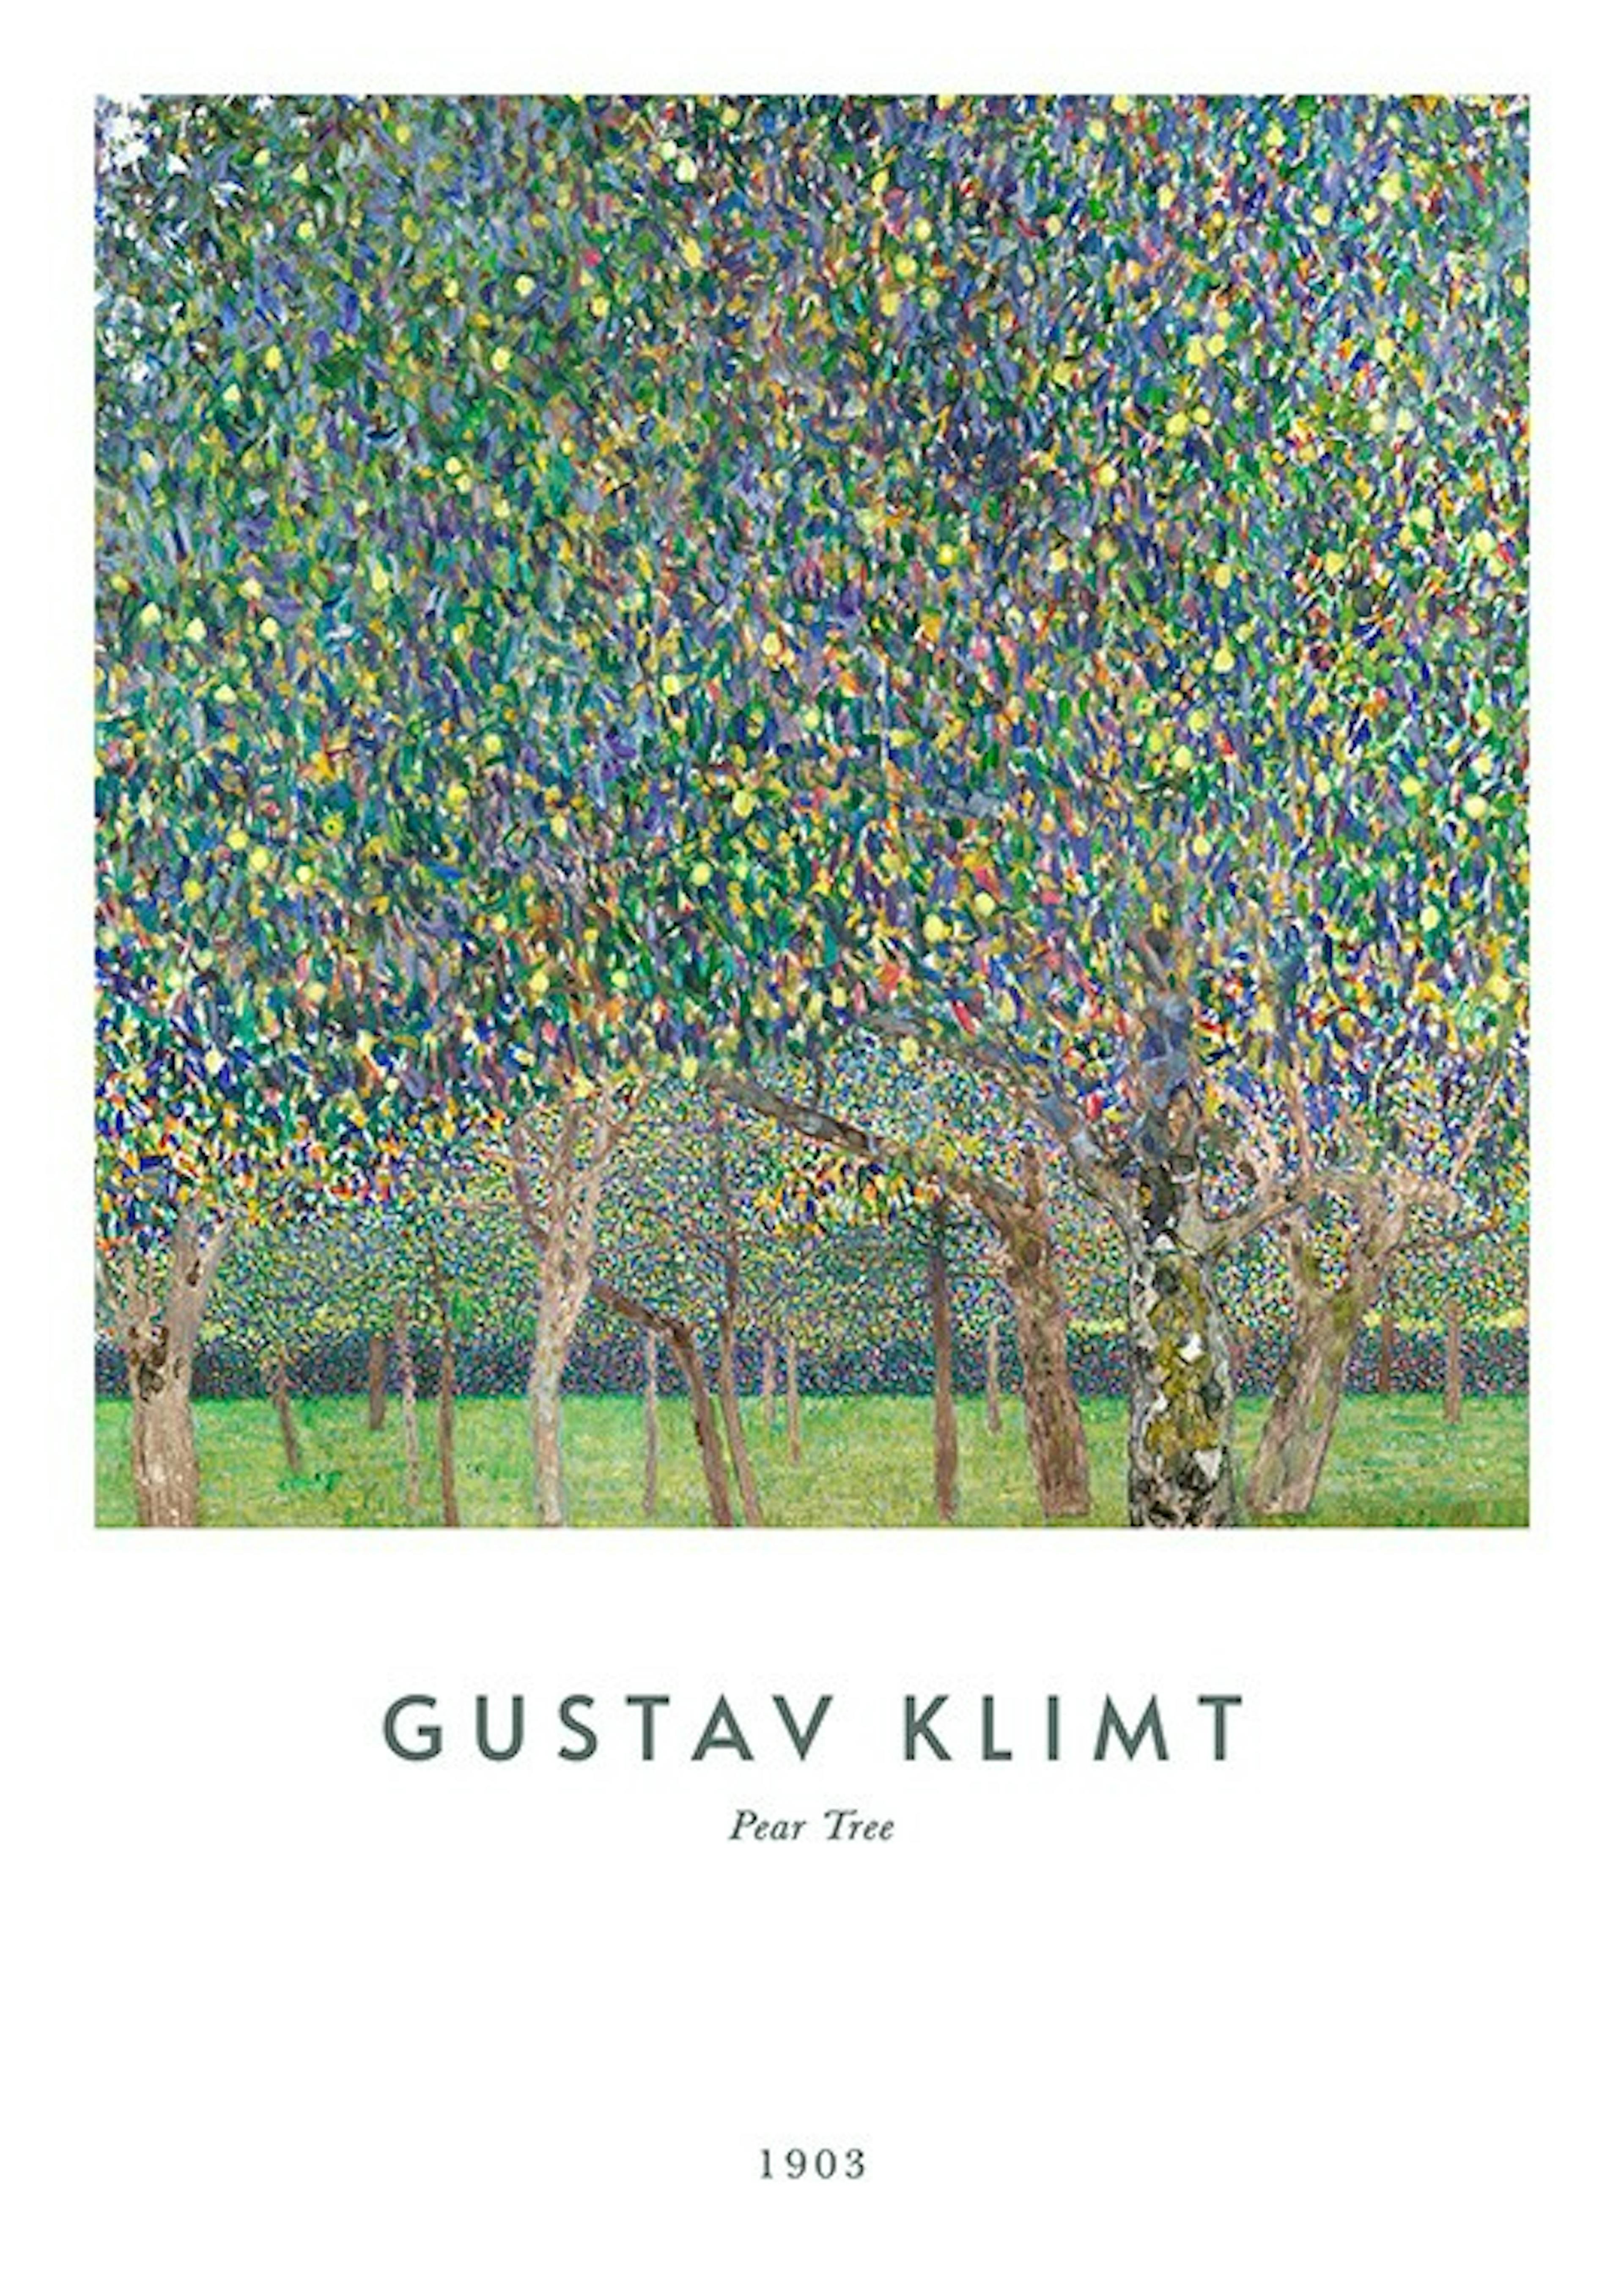 Gustav Klimt 0